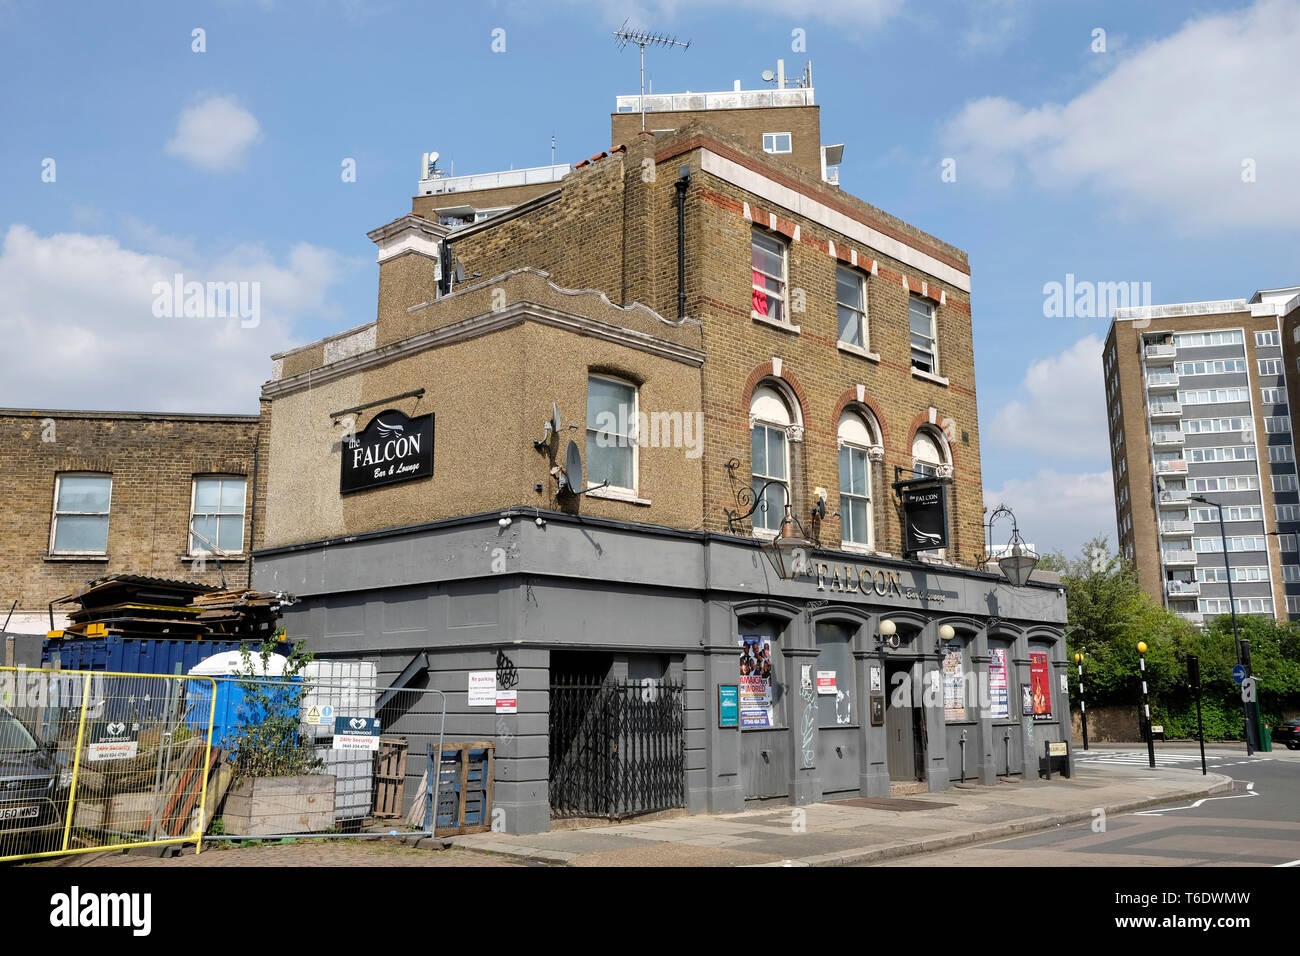 Une vue générale d'un fermé pub à Queen's Park, Londres Banque D'Images